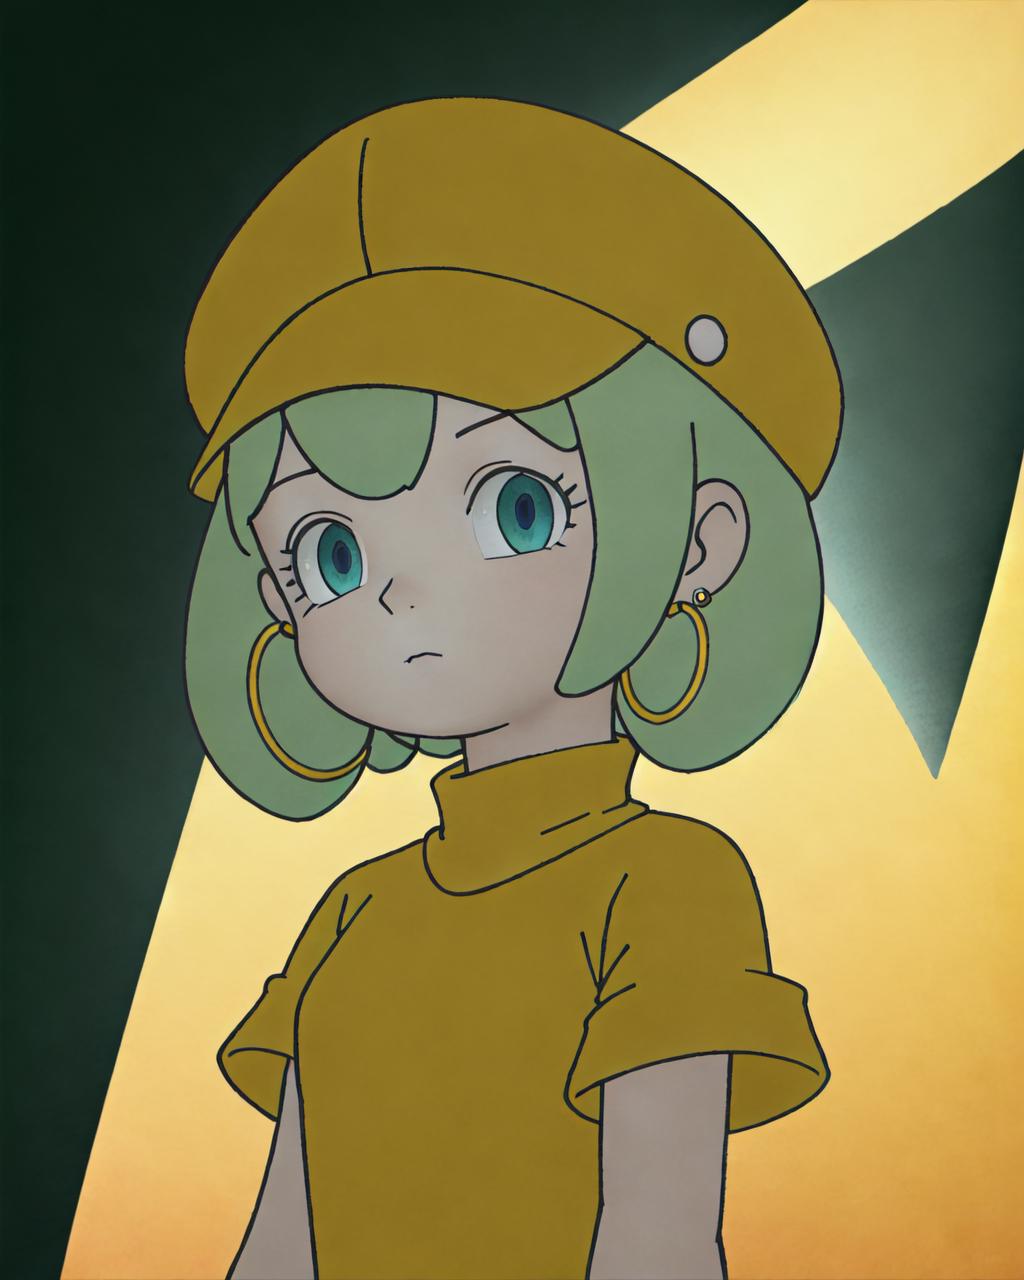 Kaiba anime style (unique cartoonish anime style) image by Aili